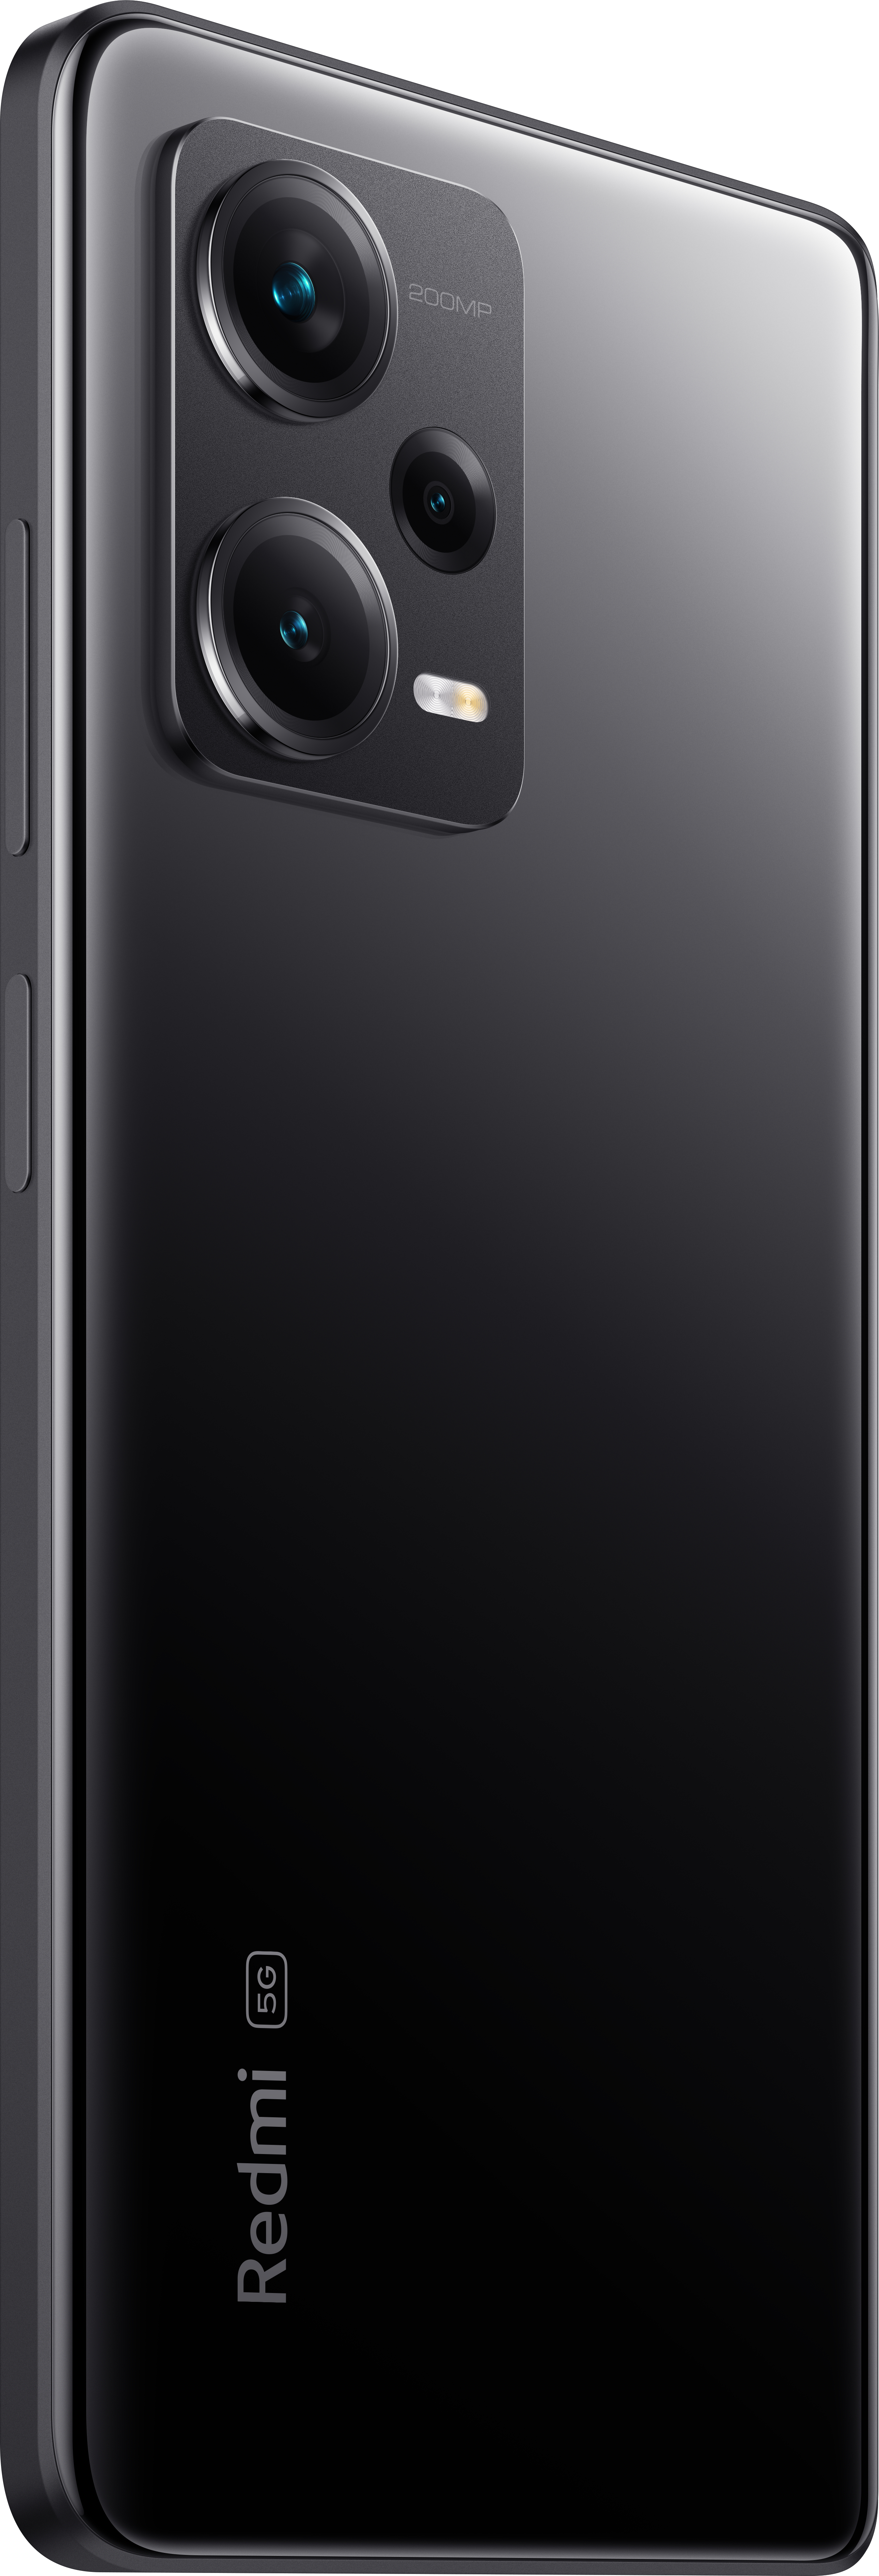 Xiaomi Redmi Note 12 Pro+ 5G 16,9 cm (6.67) SIM doble Android 12